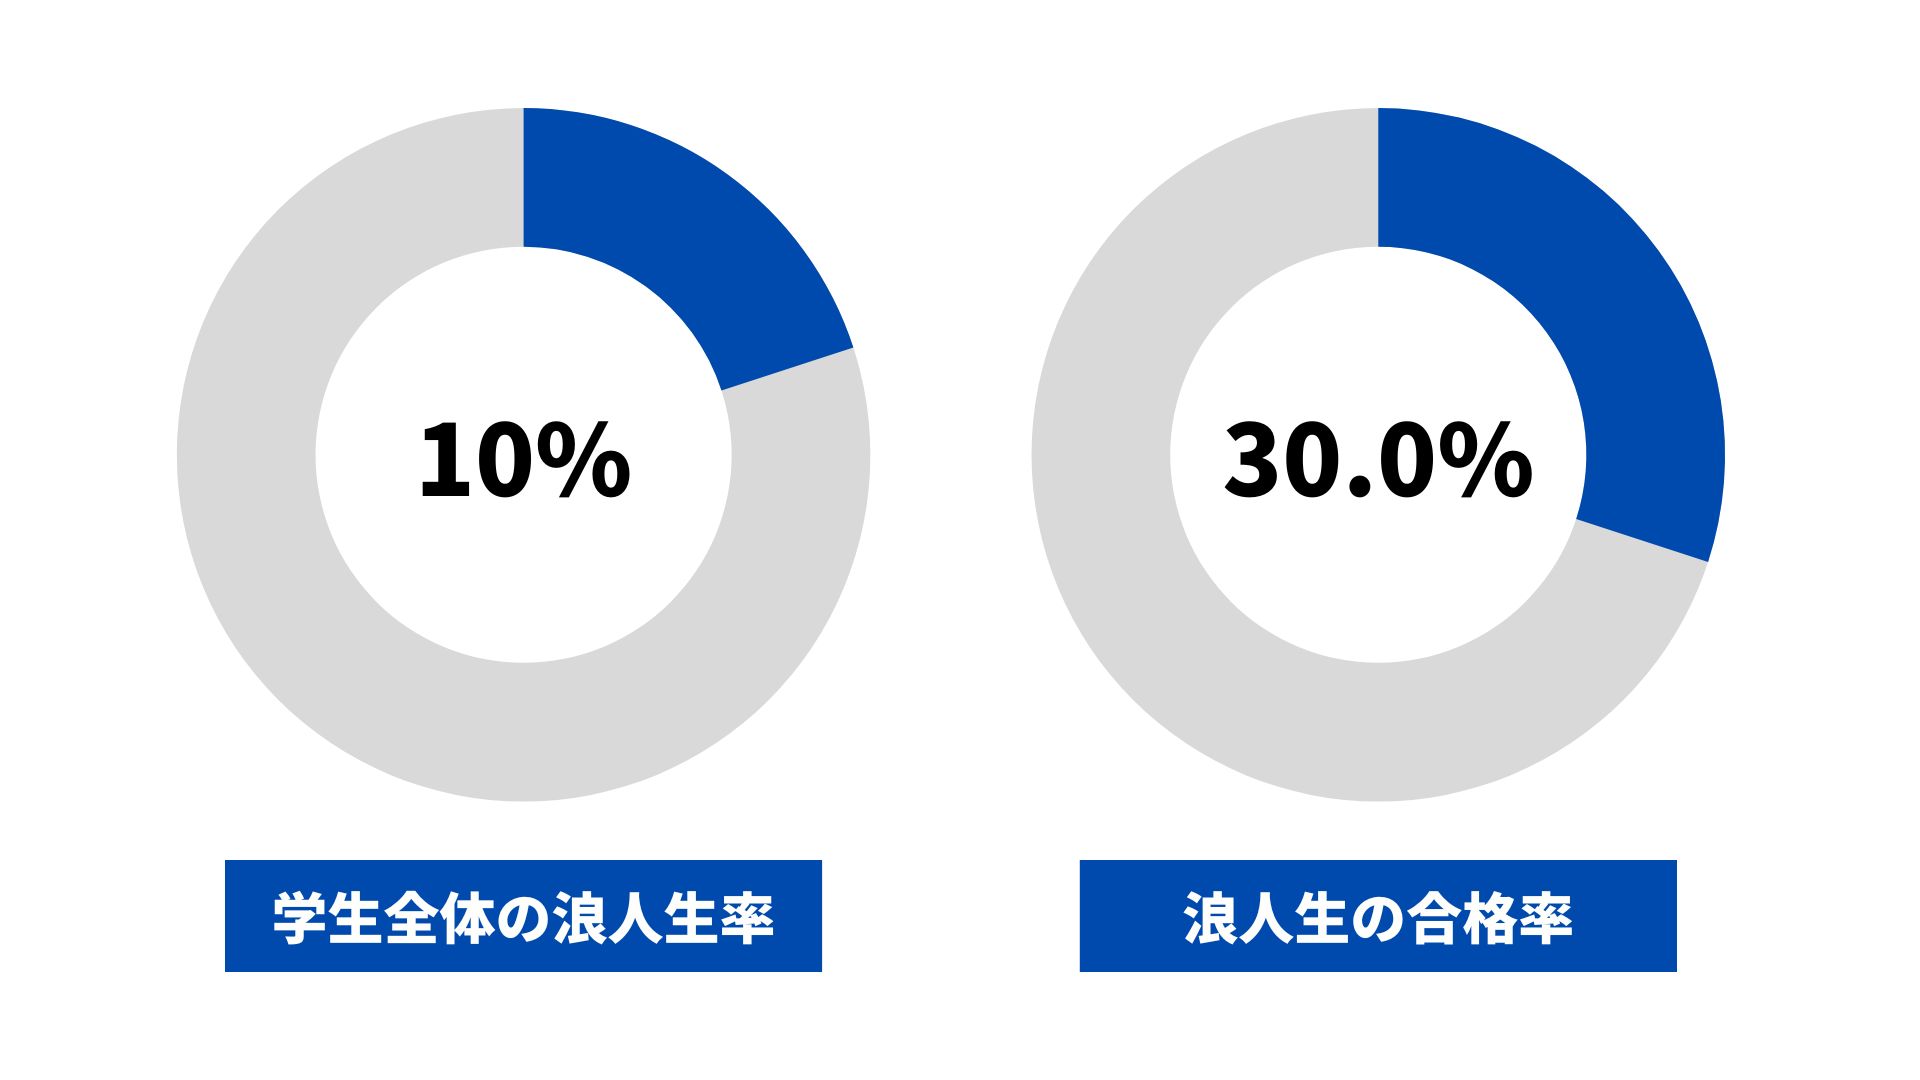 滋賀大学の浪人生の割合